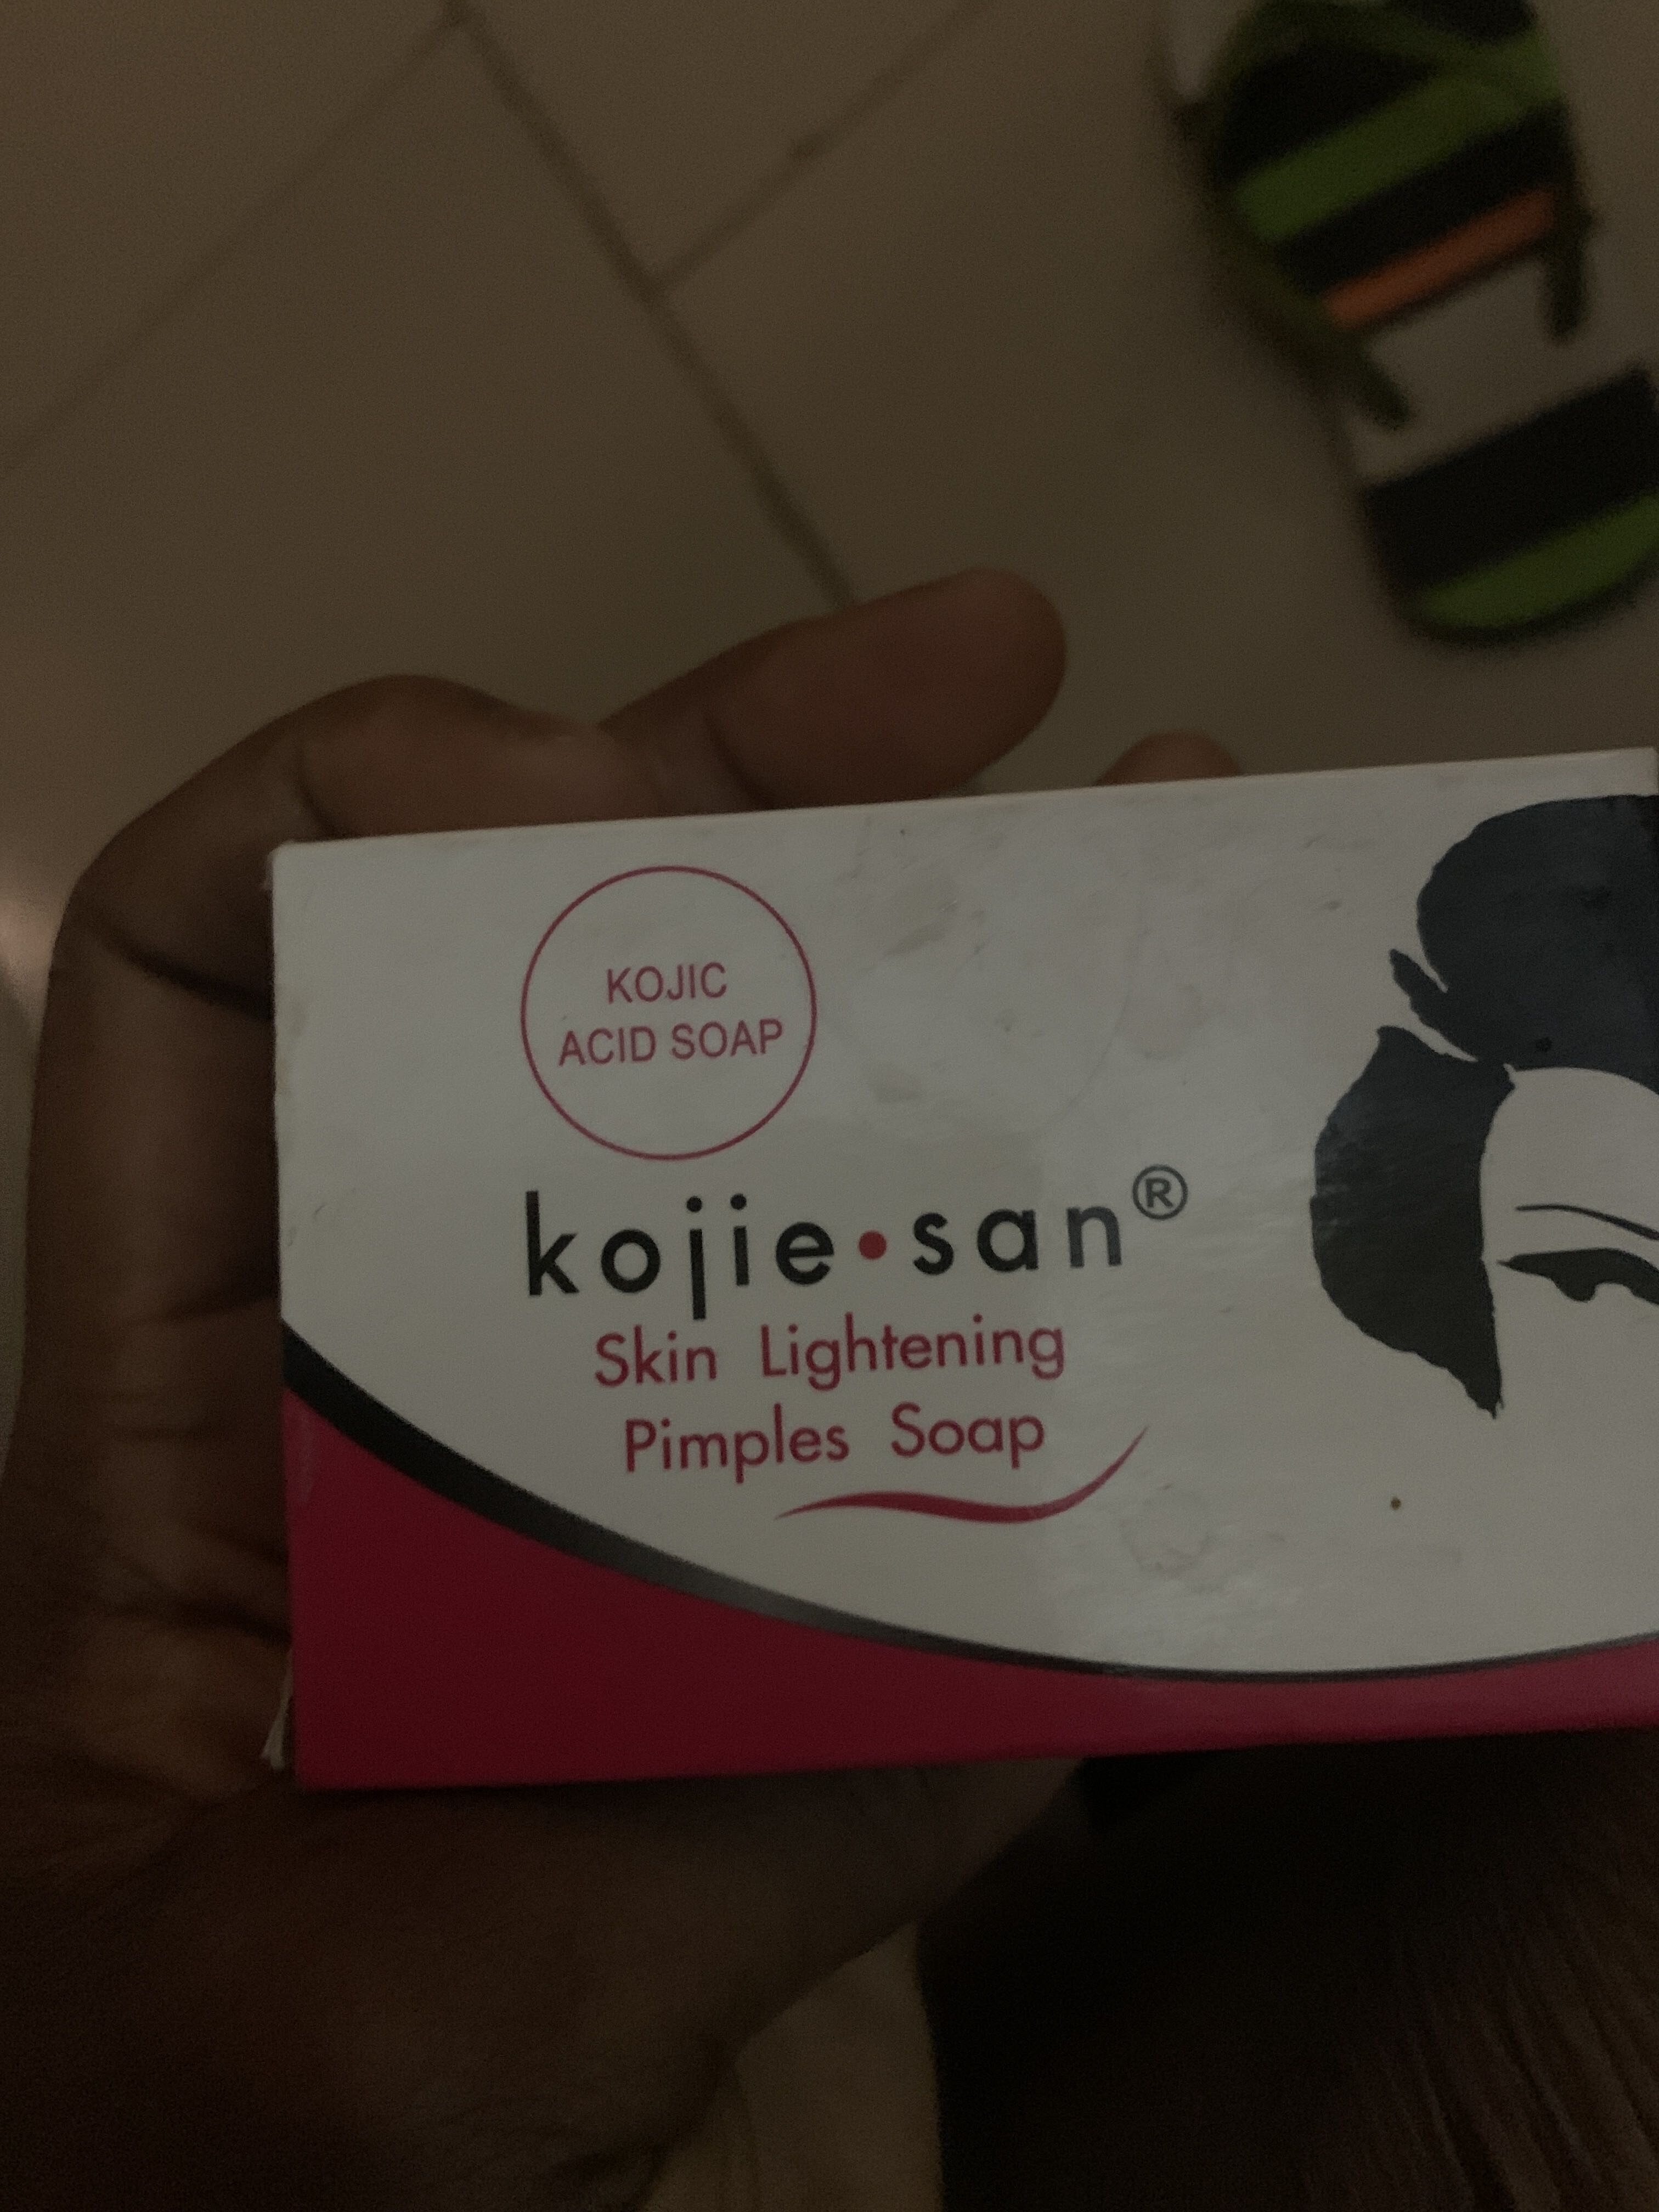 Kojie San skin lightening pimples soap - Продукт - en